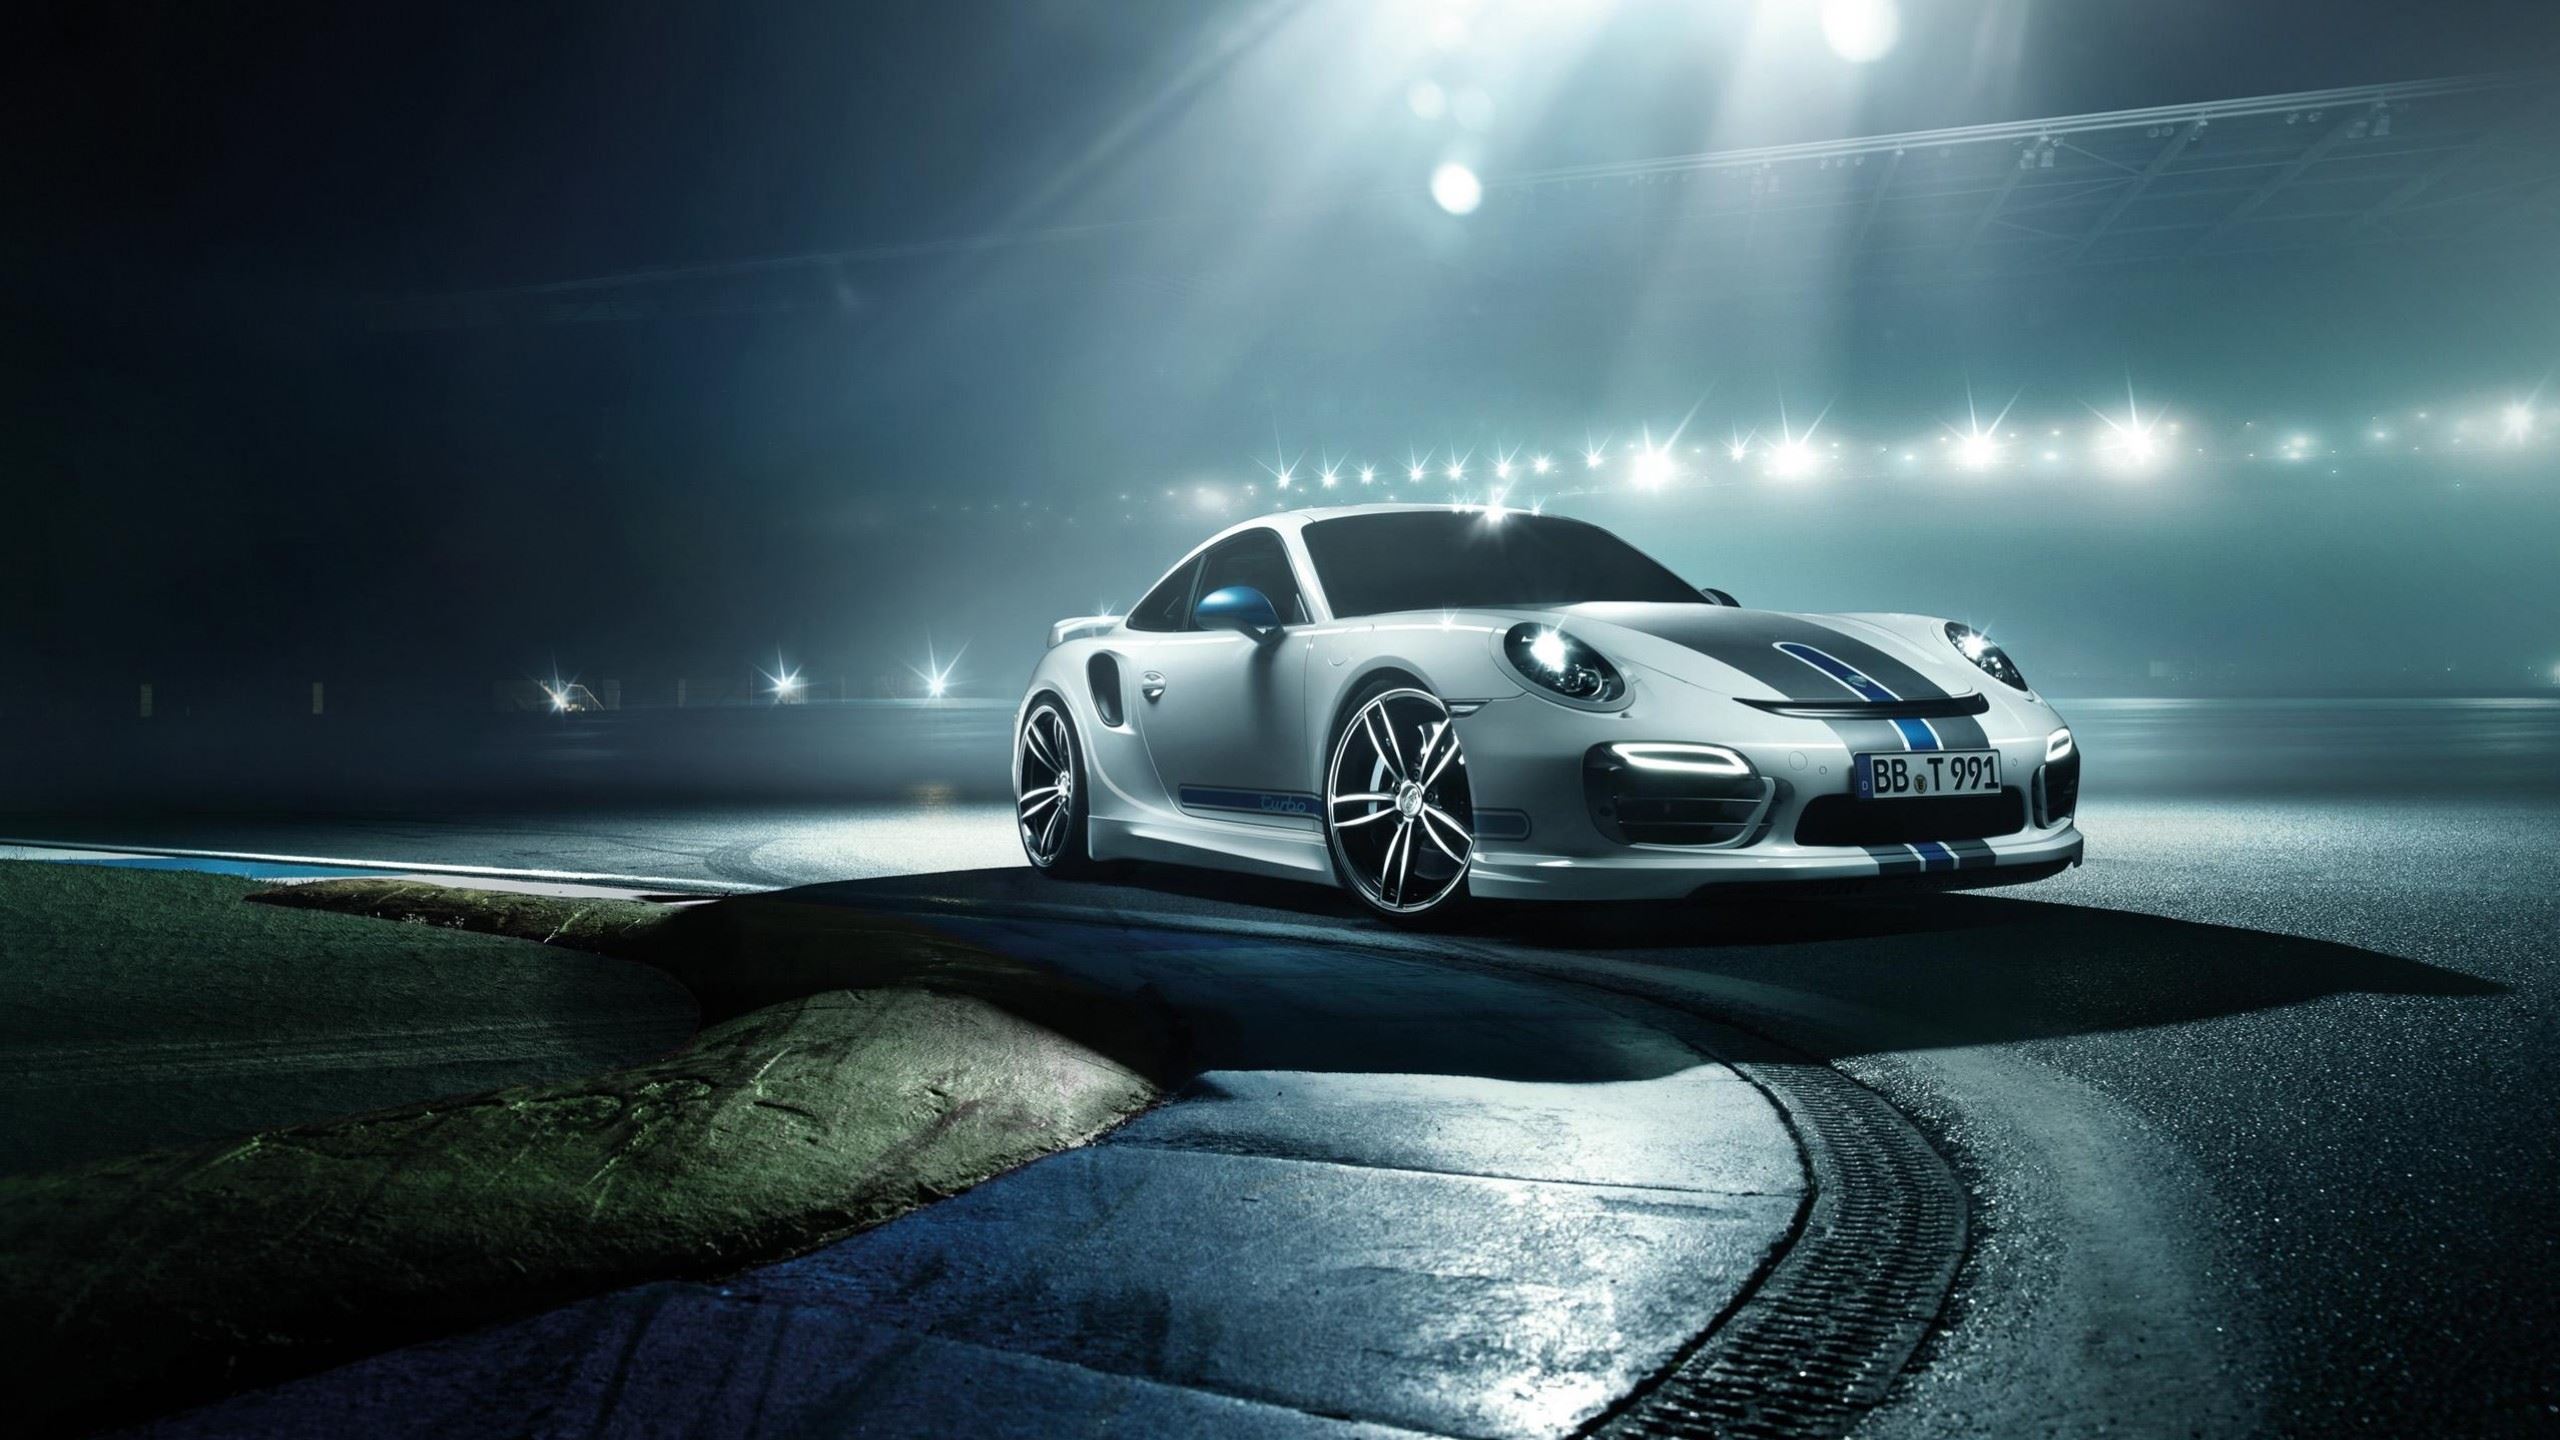 2014 Porsche 911 Turbo By Techart Mac Wallpaper Download Allmacwallpaper